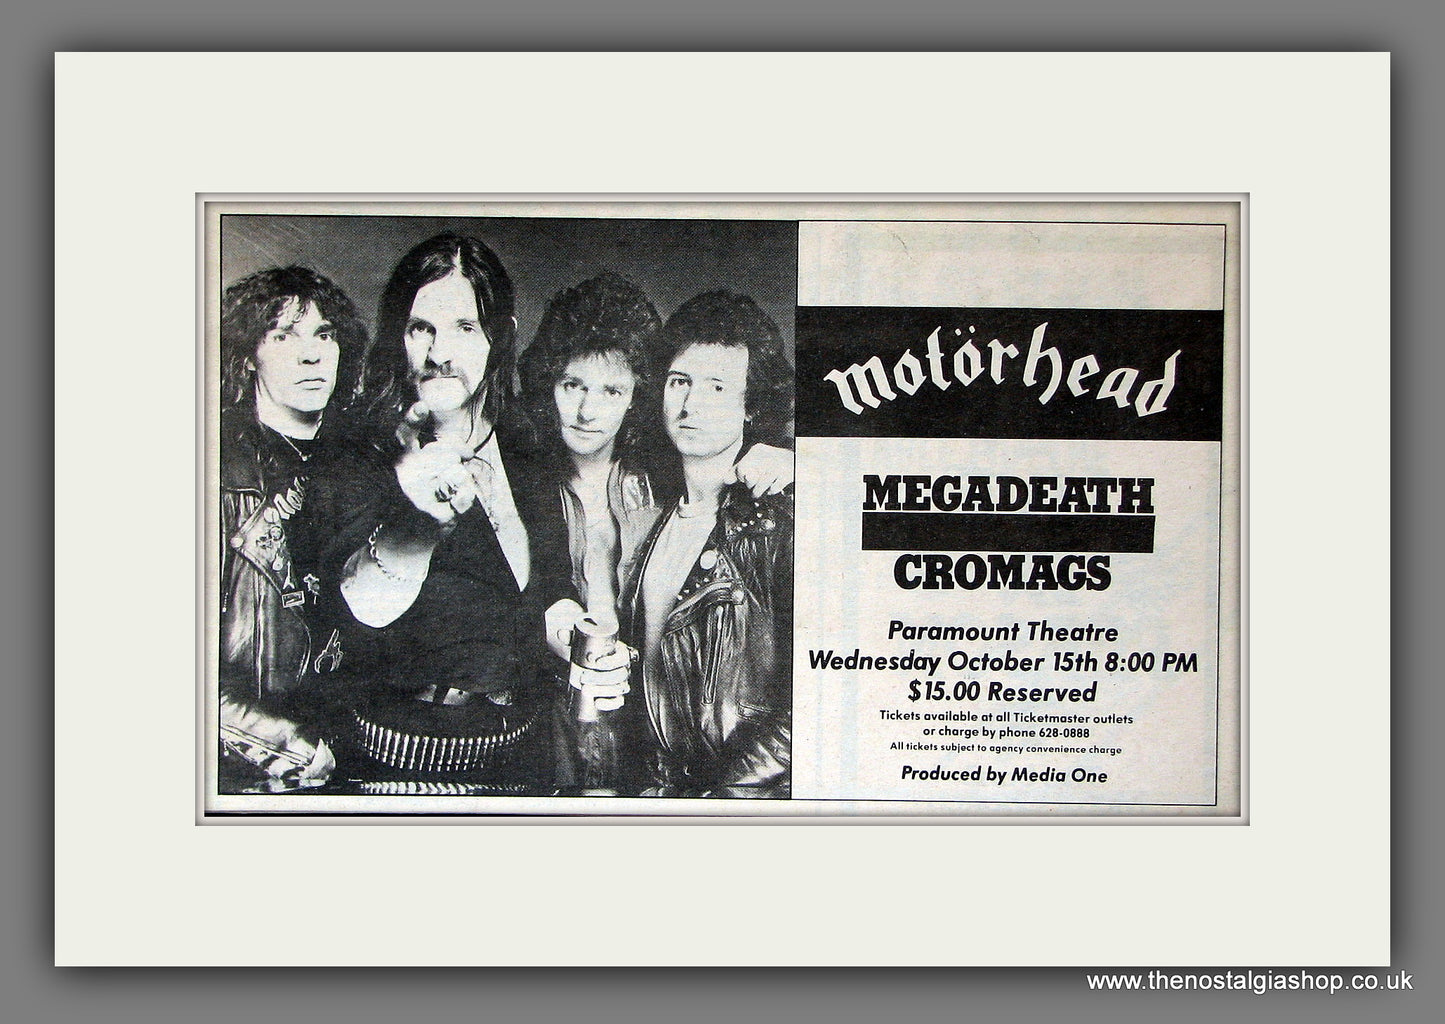 Motorhead, Megadeath, Cromags Concert. Original Vintage Advert 1986 (ref AD56424)